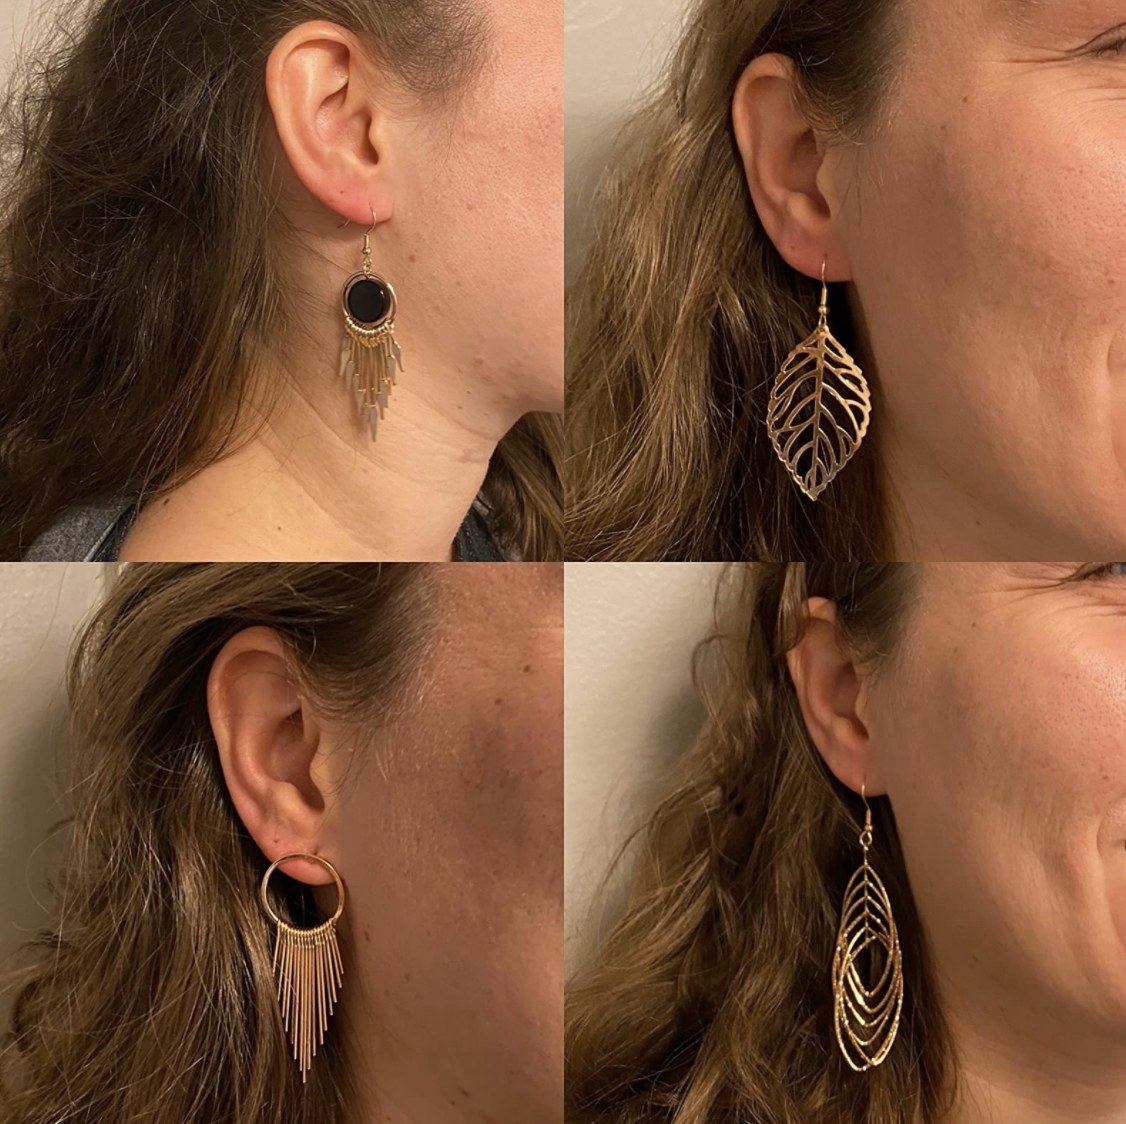 Four earrings